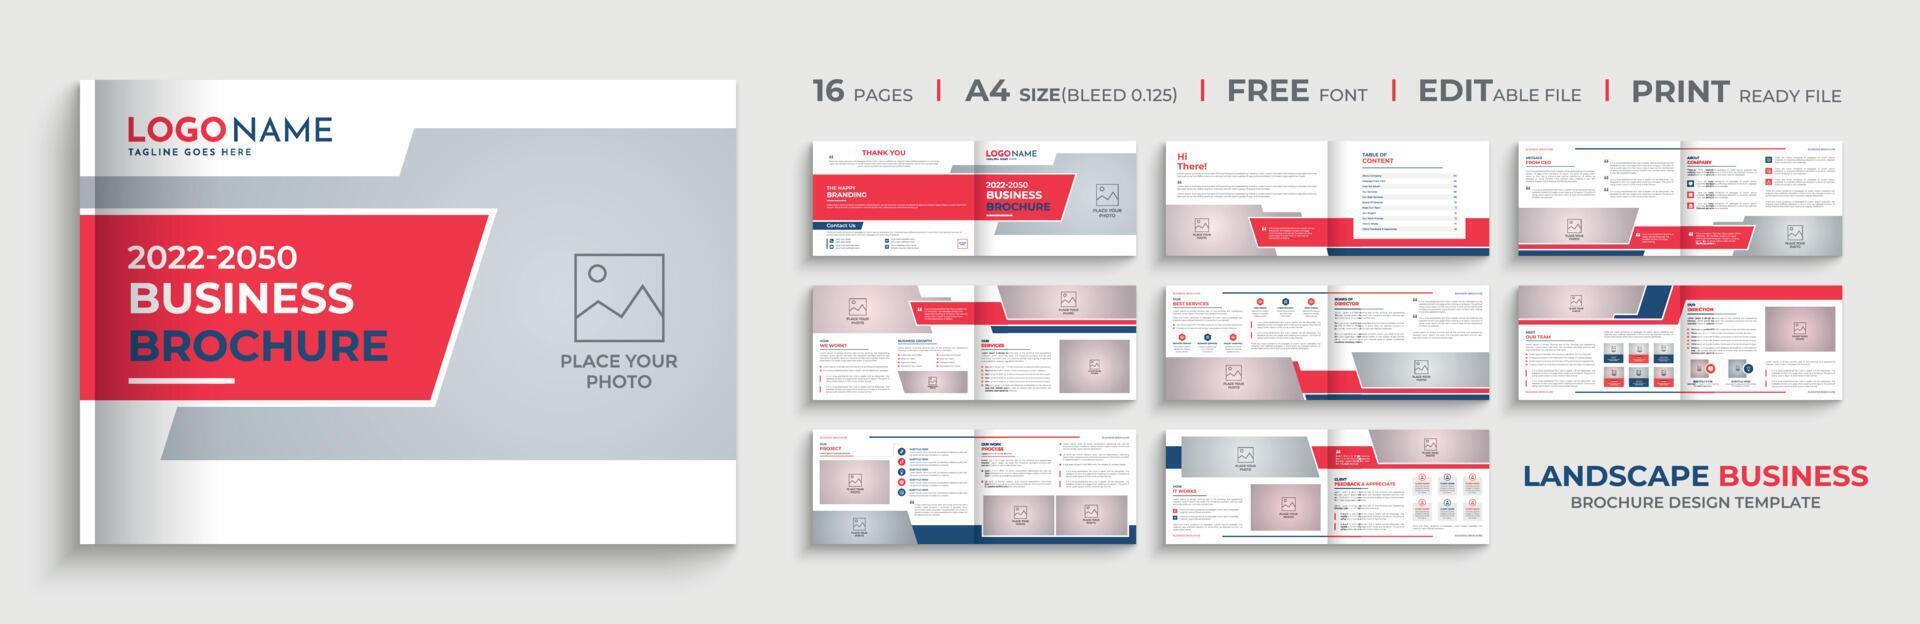 16 sida kreativ landskap företag företag profil broschyr mall design vektor